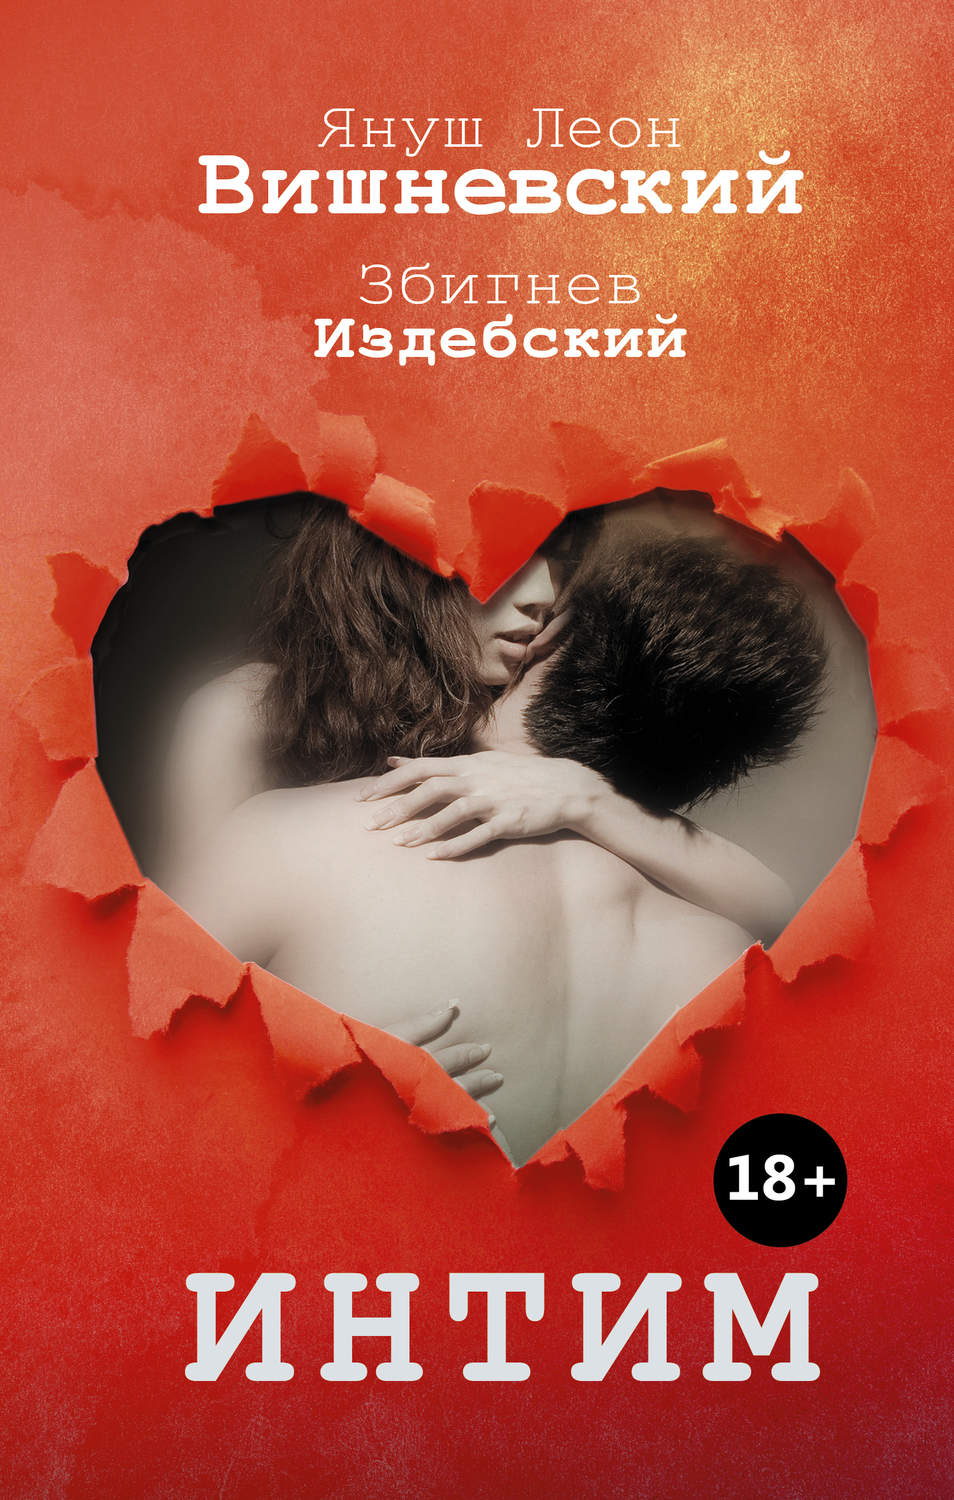 Аннина: Беседы о сексе / Annina`s Sex Talk () Смотреть онлайн порно фильм с русским переводом